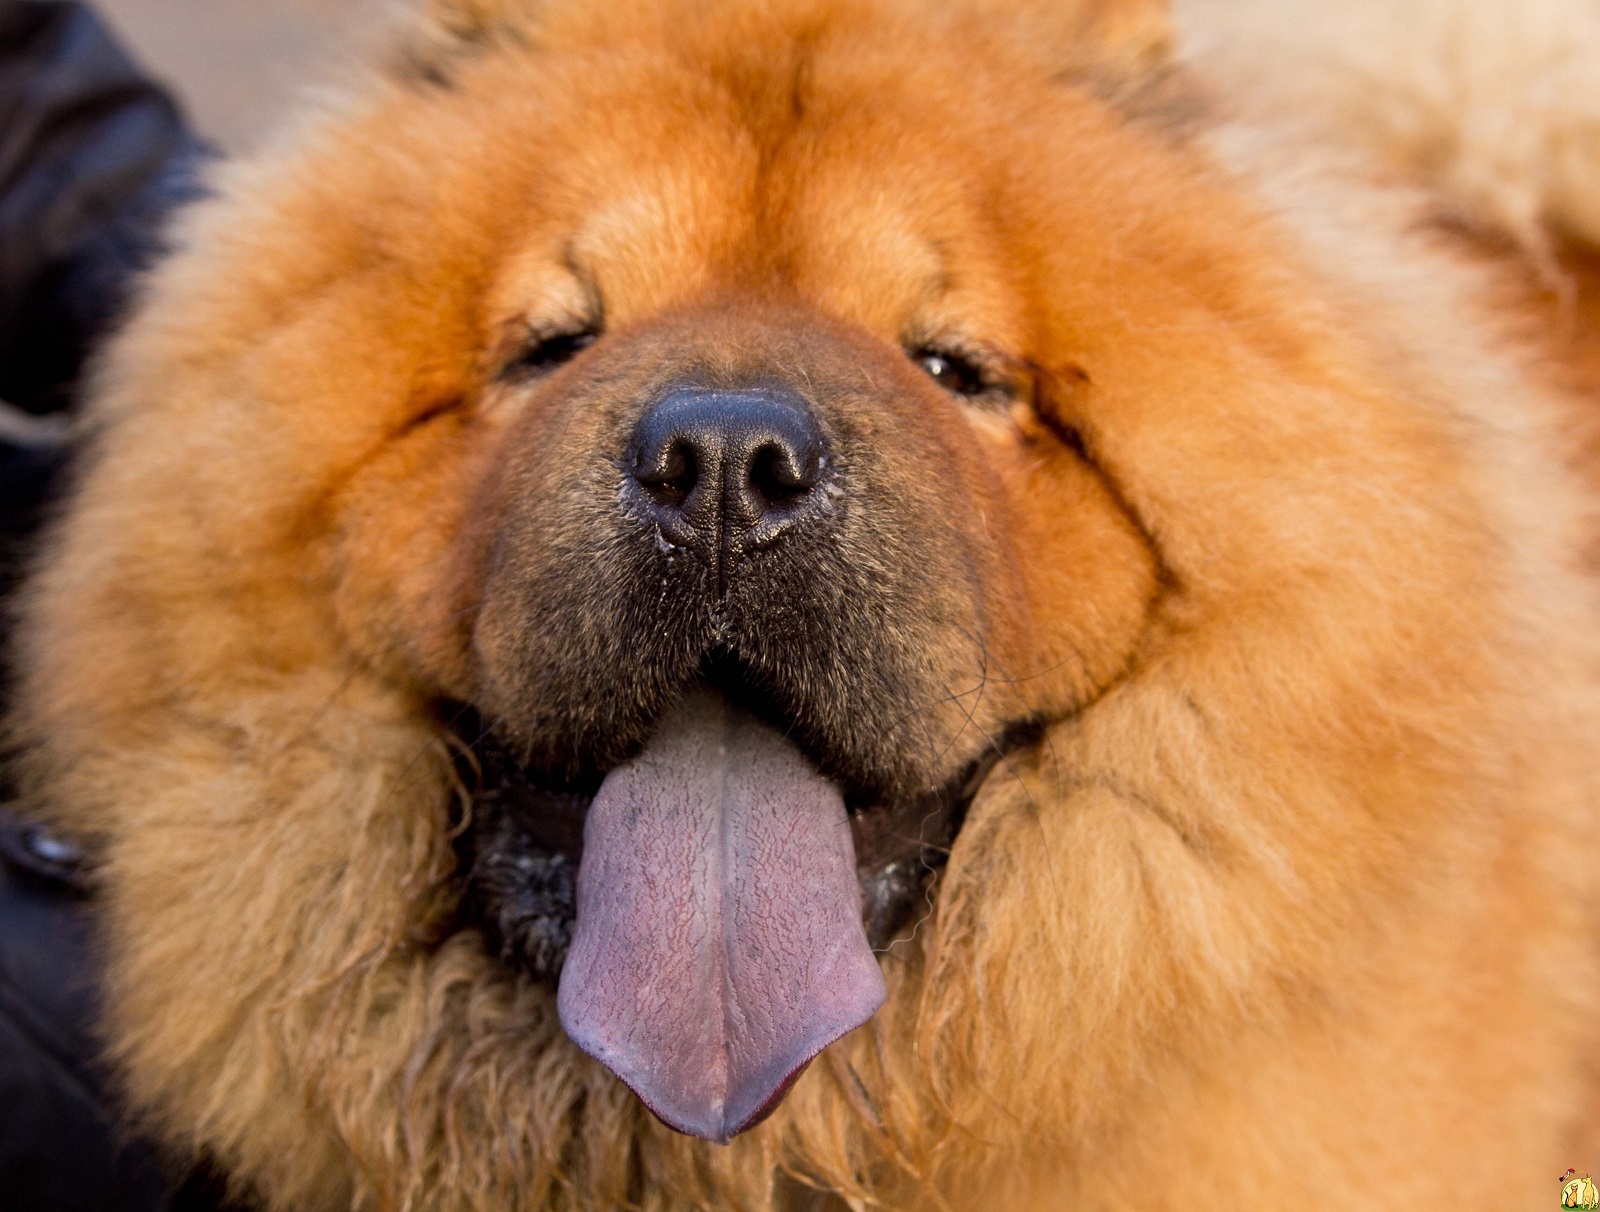 ᐉ собака с синим или фиолетовым языком: как называется порода (чау чау) - kcc-zoo.ru